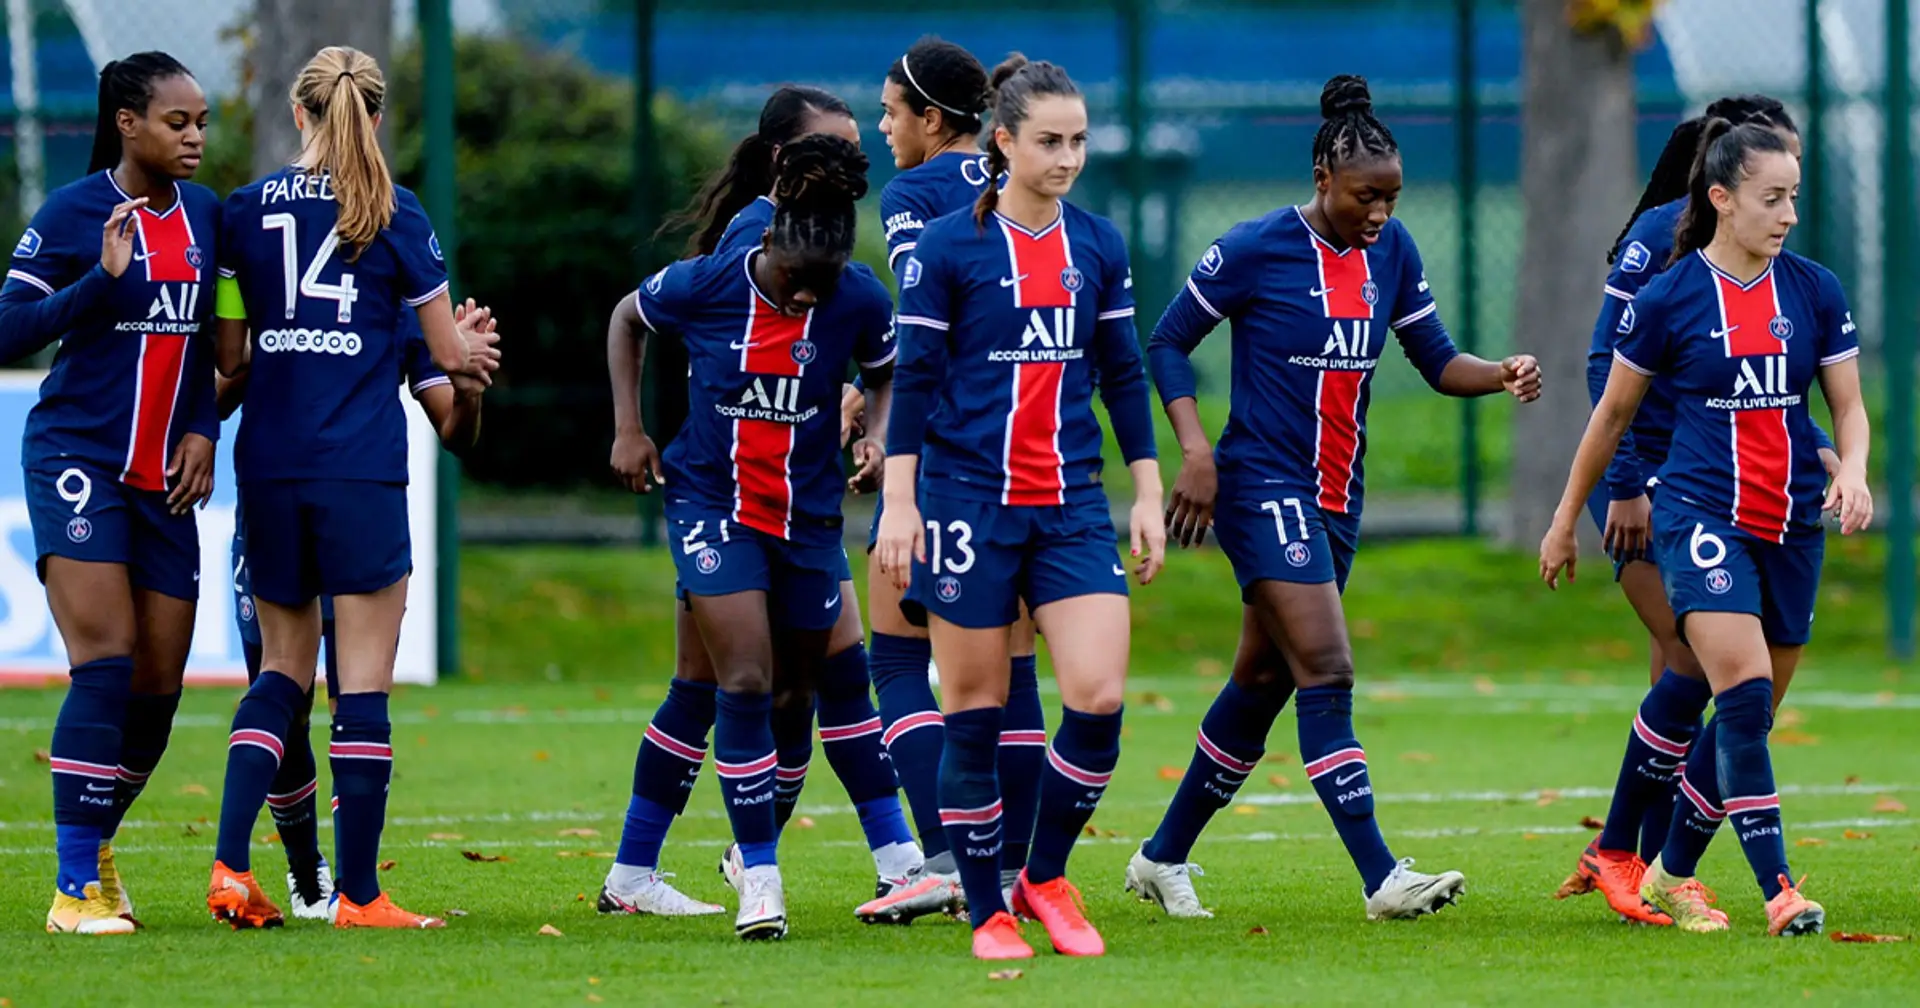 L'équipe féminine du PSG se qualifie pour les quarts de finale de LDC  malgré une défaite sur tapis vert - Football